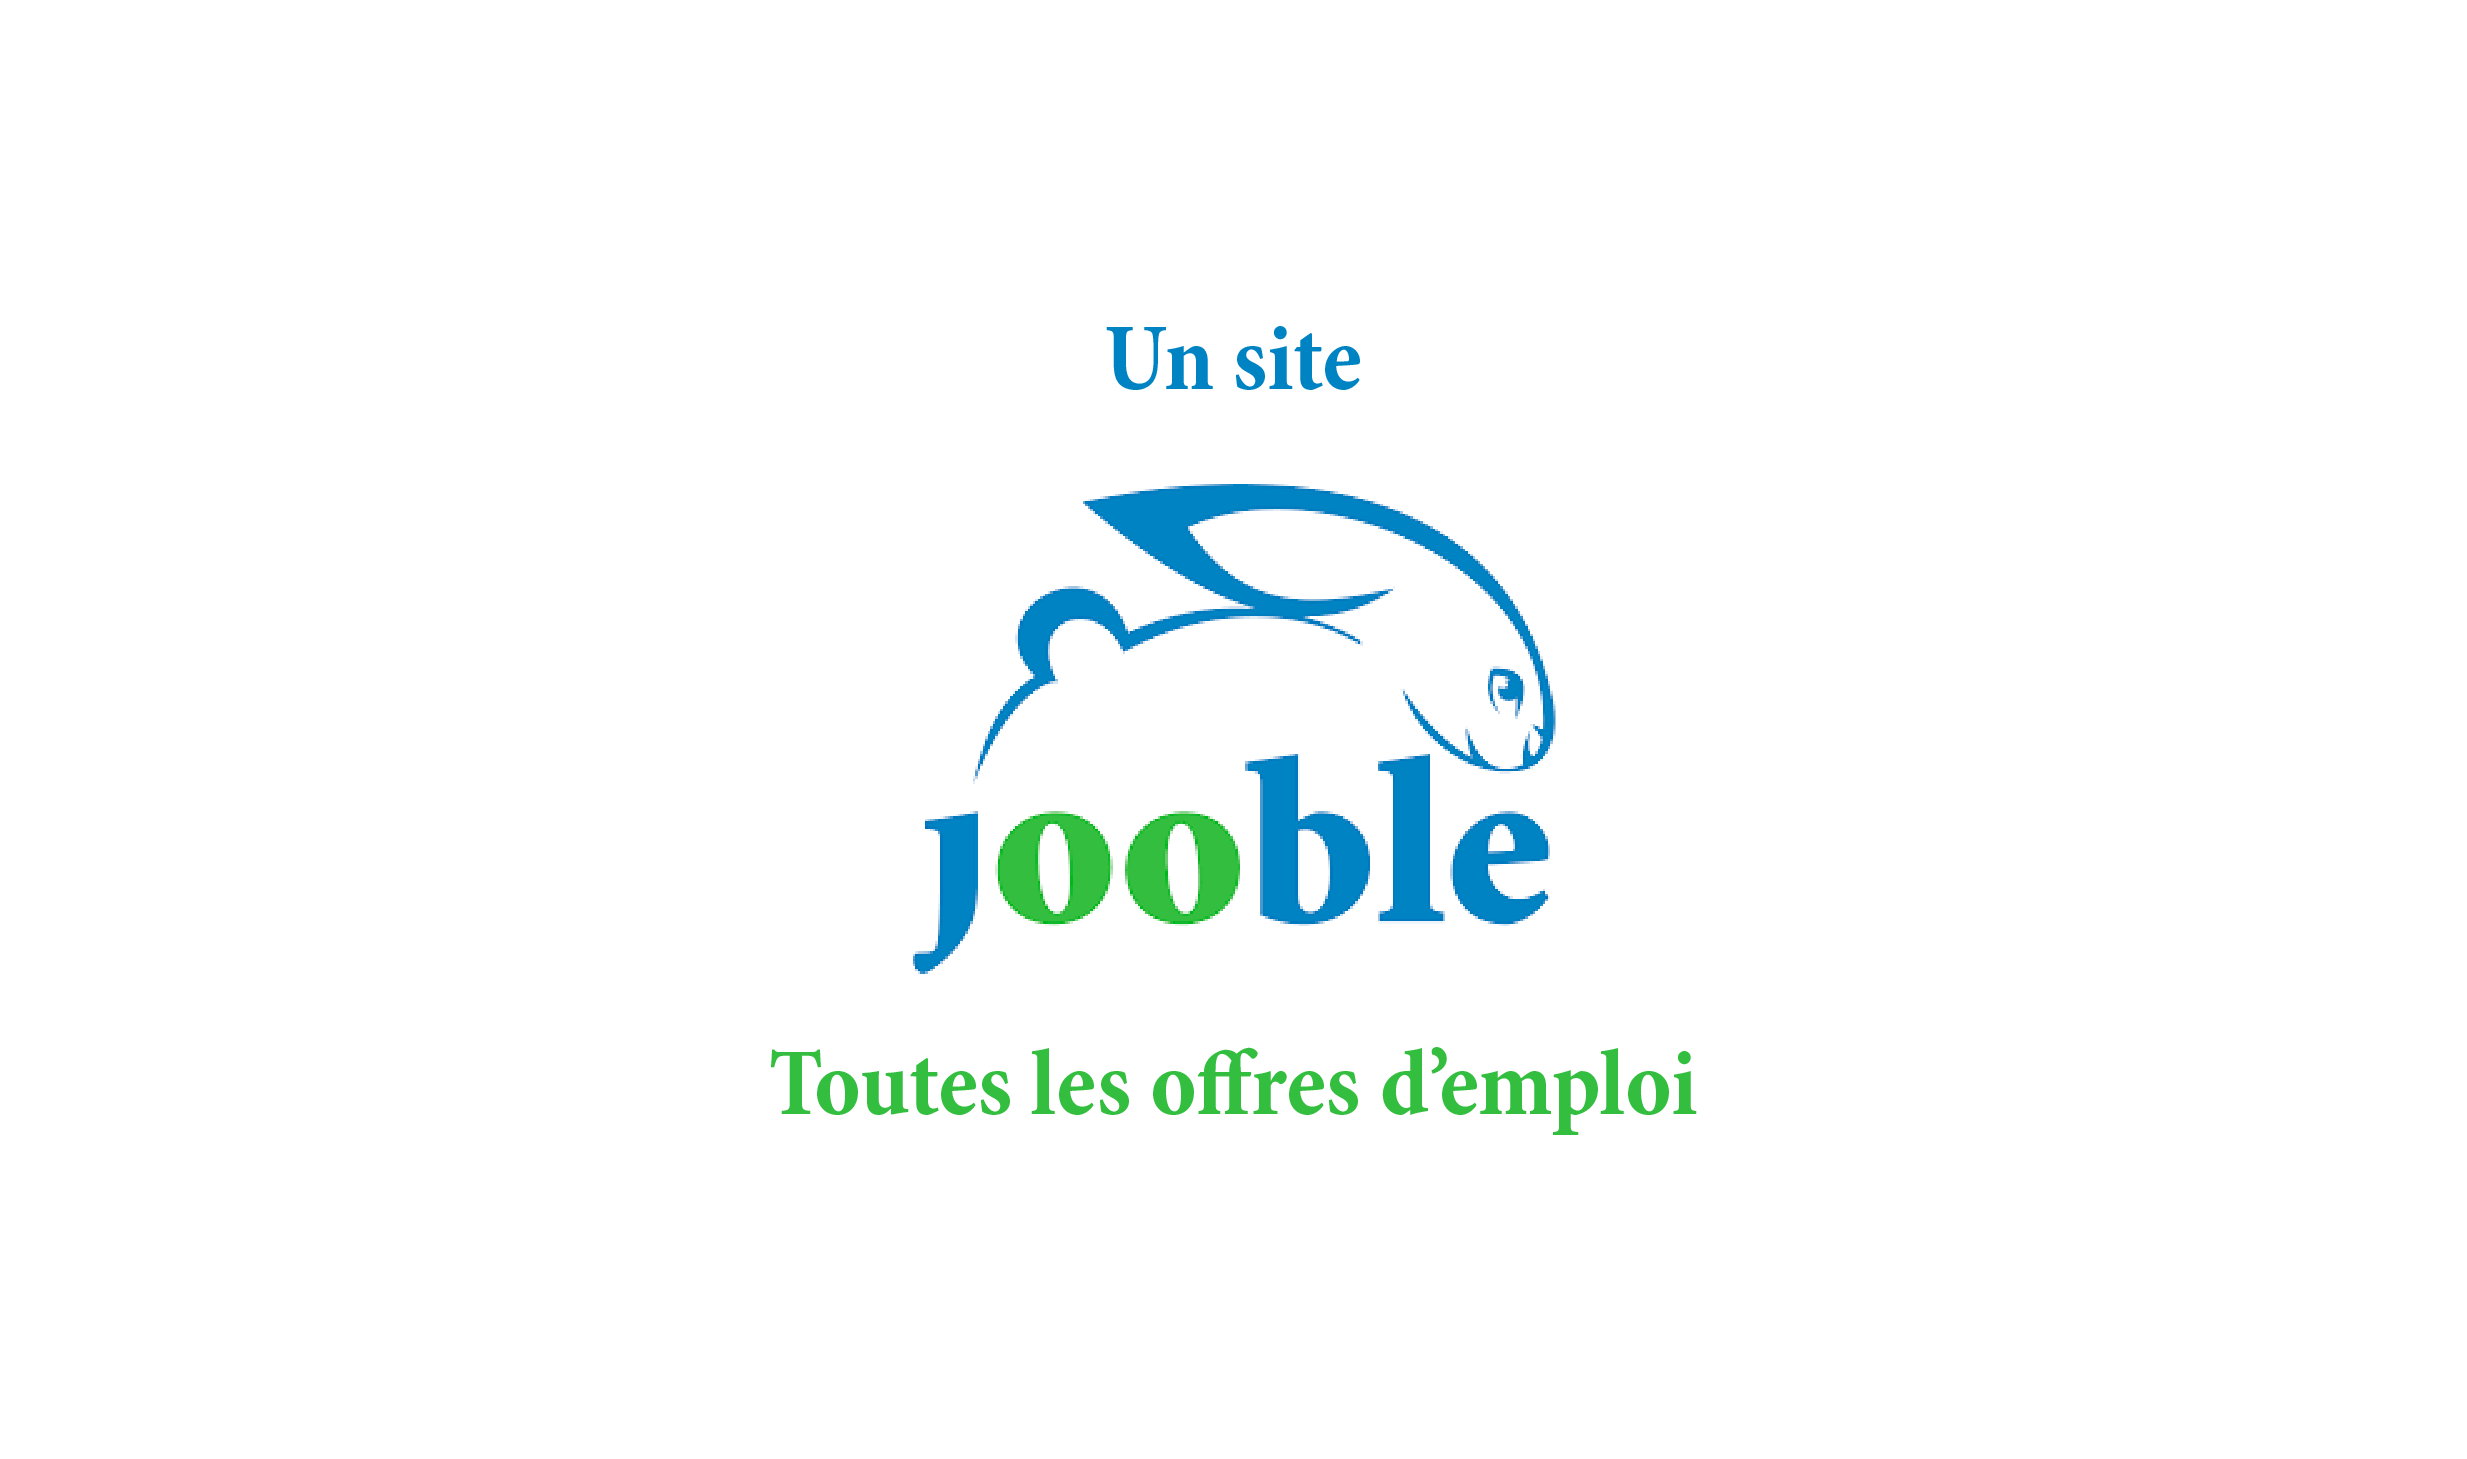 Jooble 520px x 350px